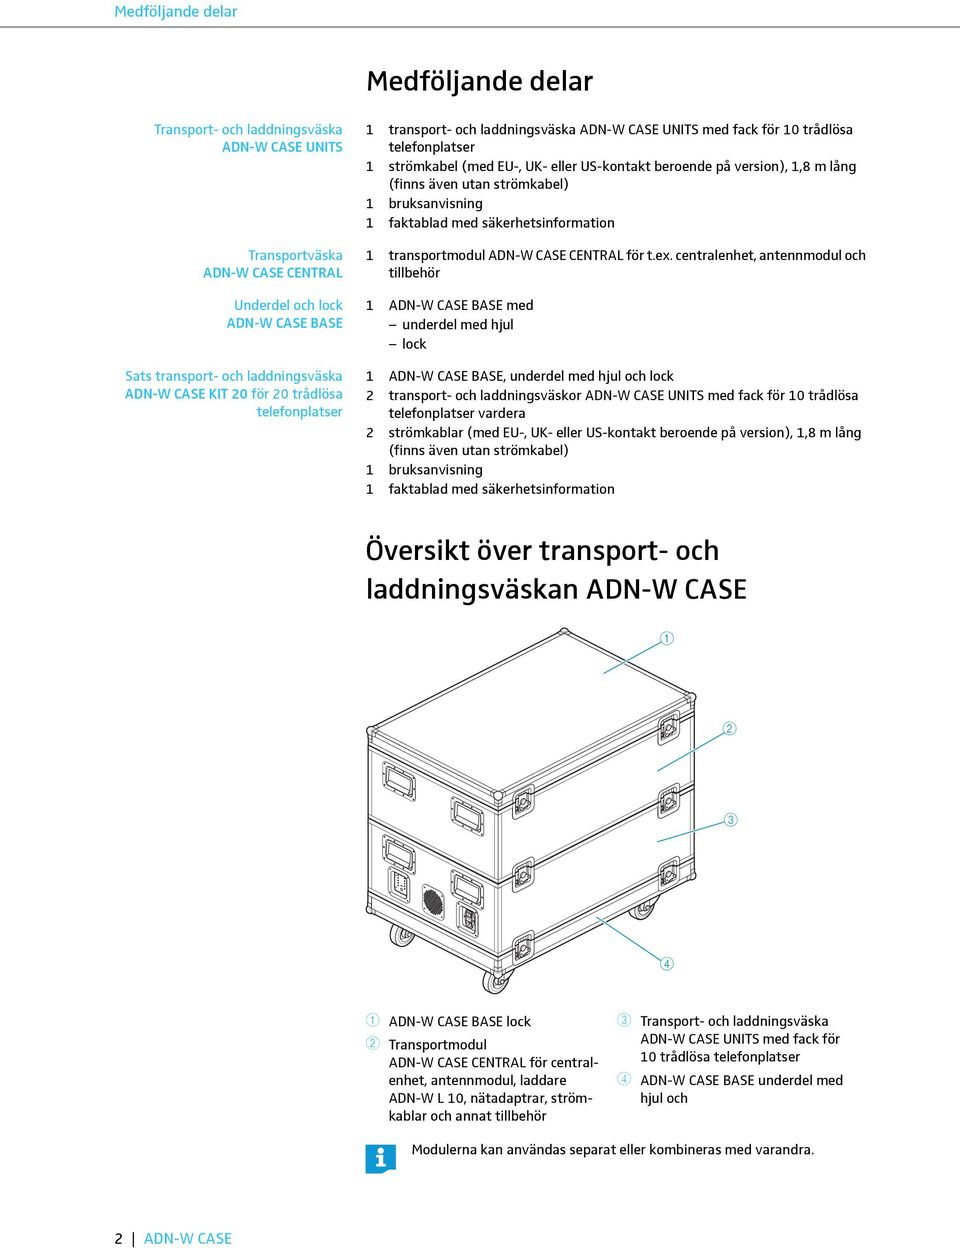 (finns även utan strömkabel) bruksanvisning faktablad med säkerhetsinformation transportmodul ADN-W CASE CENTRAL för t.ex.